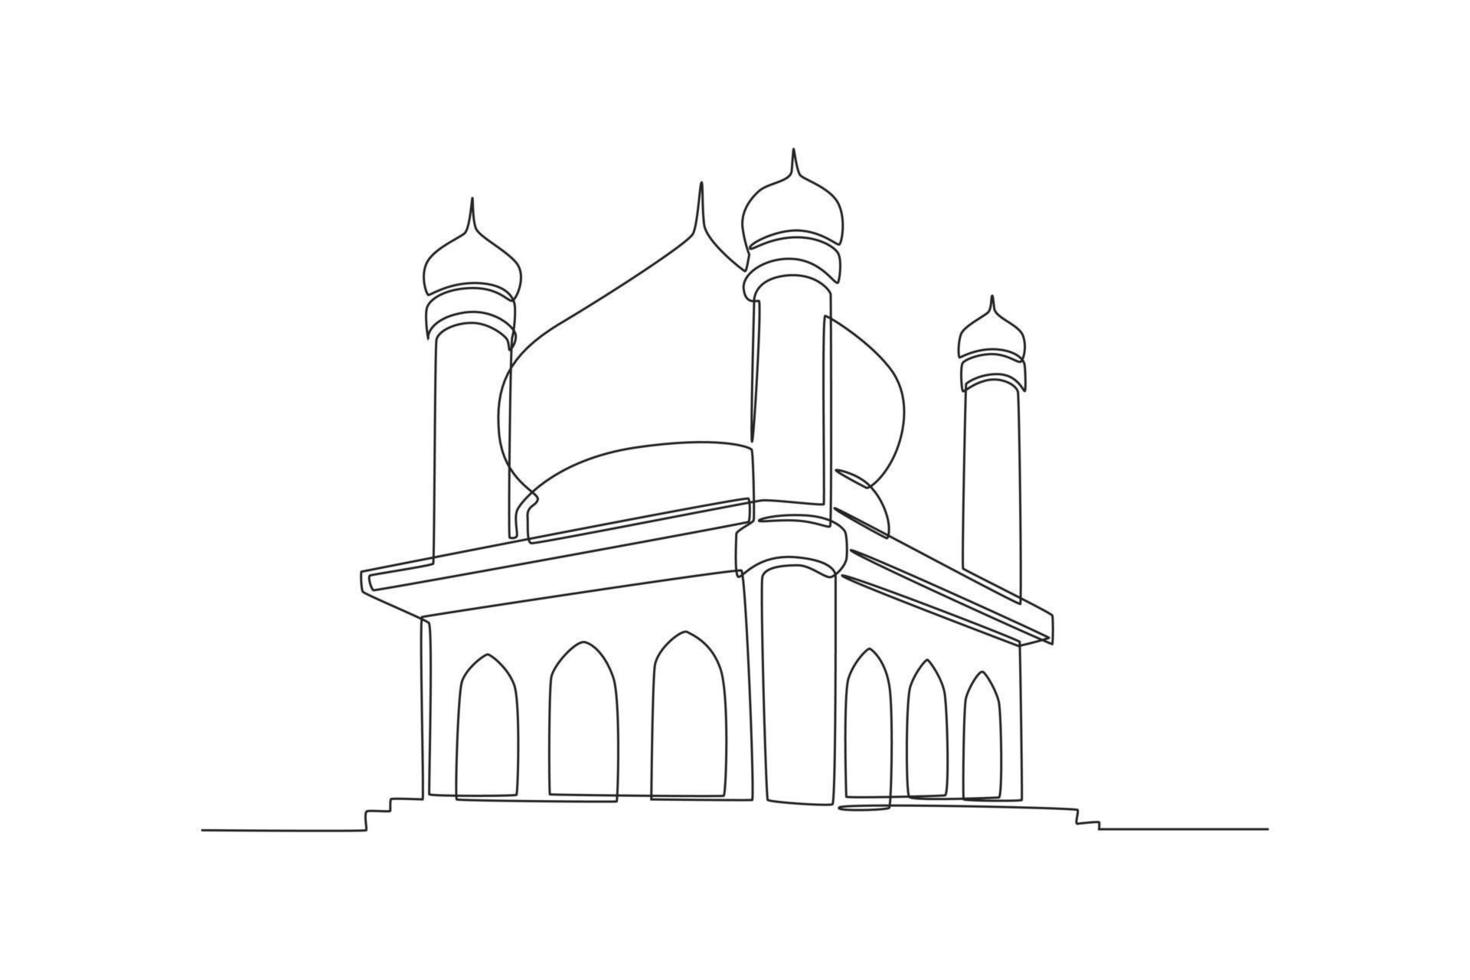 en kontinuerlig linjeteckning av vacker landskapsmoské. islamisk moské koncept. enda rad rita design vektorgrafisk illustration. vektor